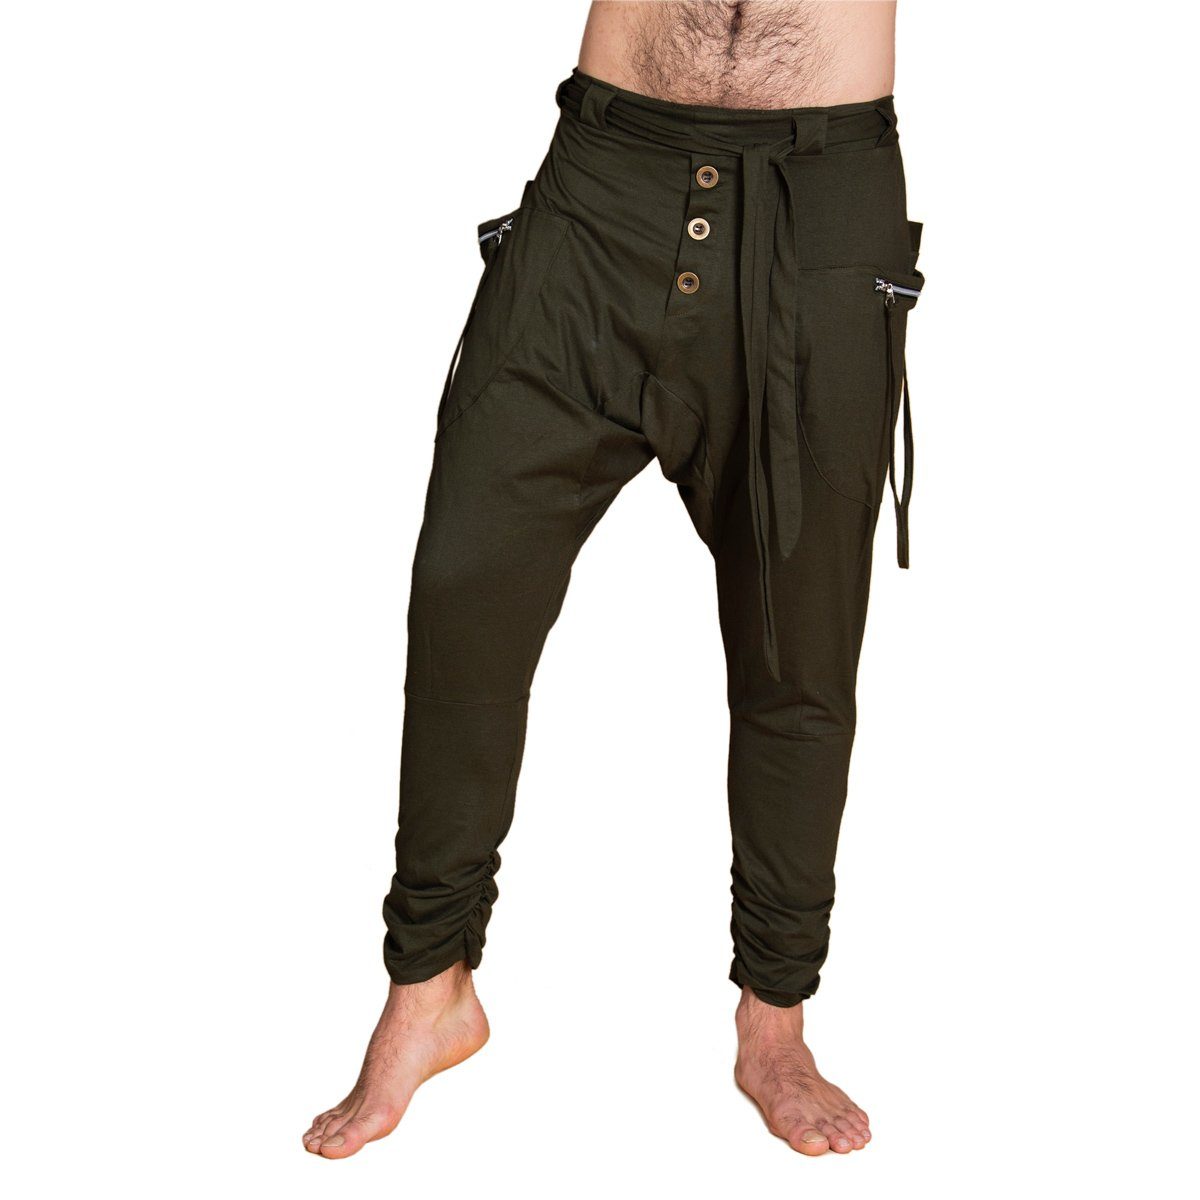 PANASIAM Wellnesshose Baggy Pants Ch01 modische Haremshose aus festem  Baumwoll-Jersey-Stoff bequeme Unisex Freizeithose für Damen und Herren